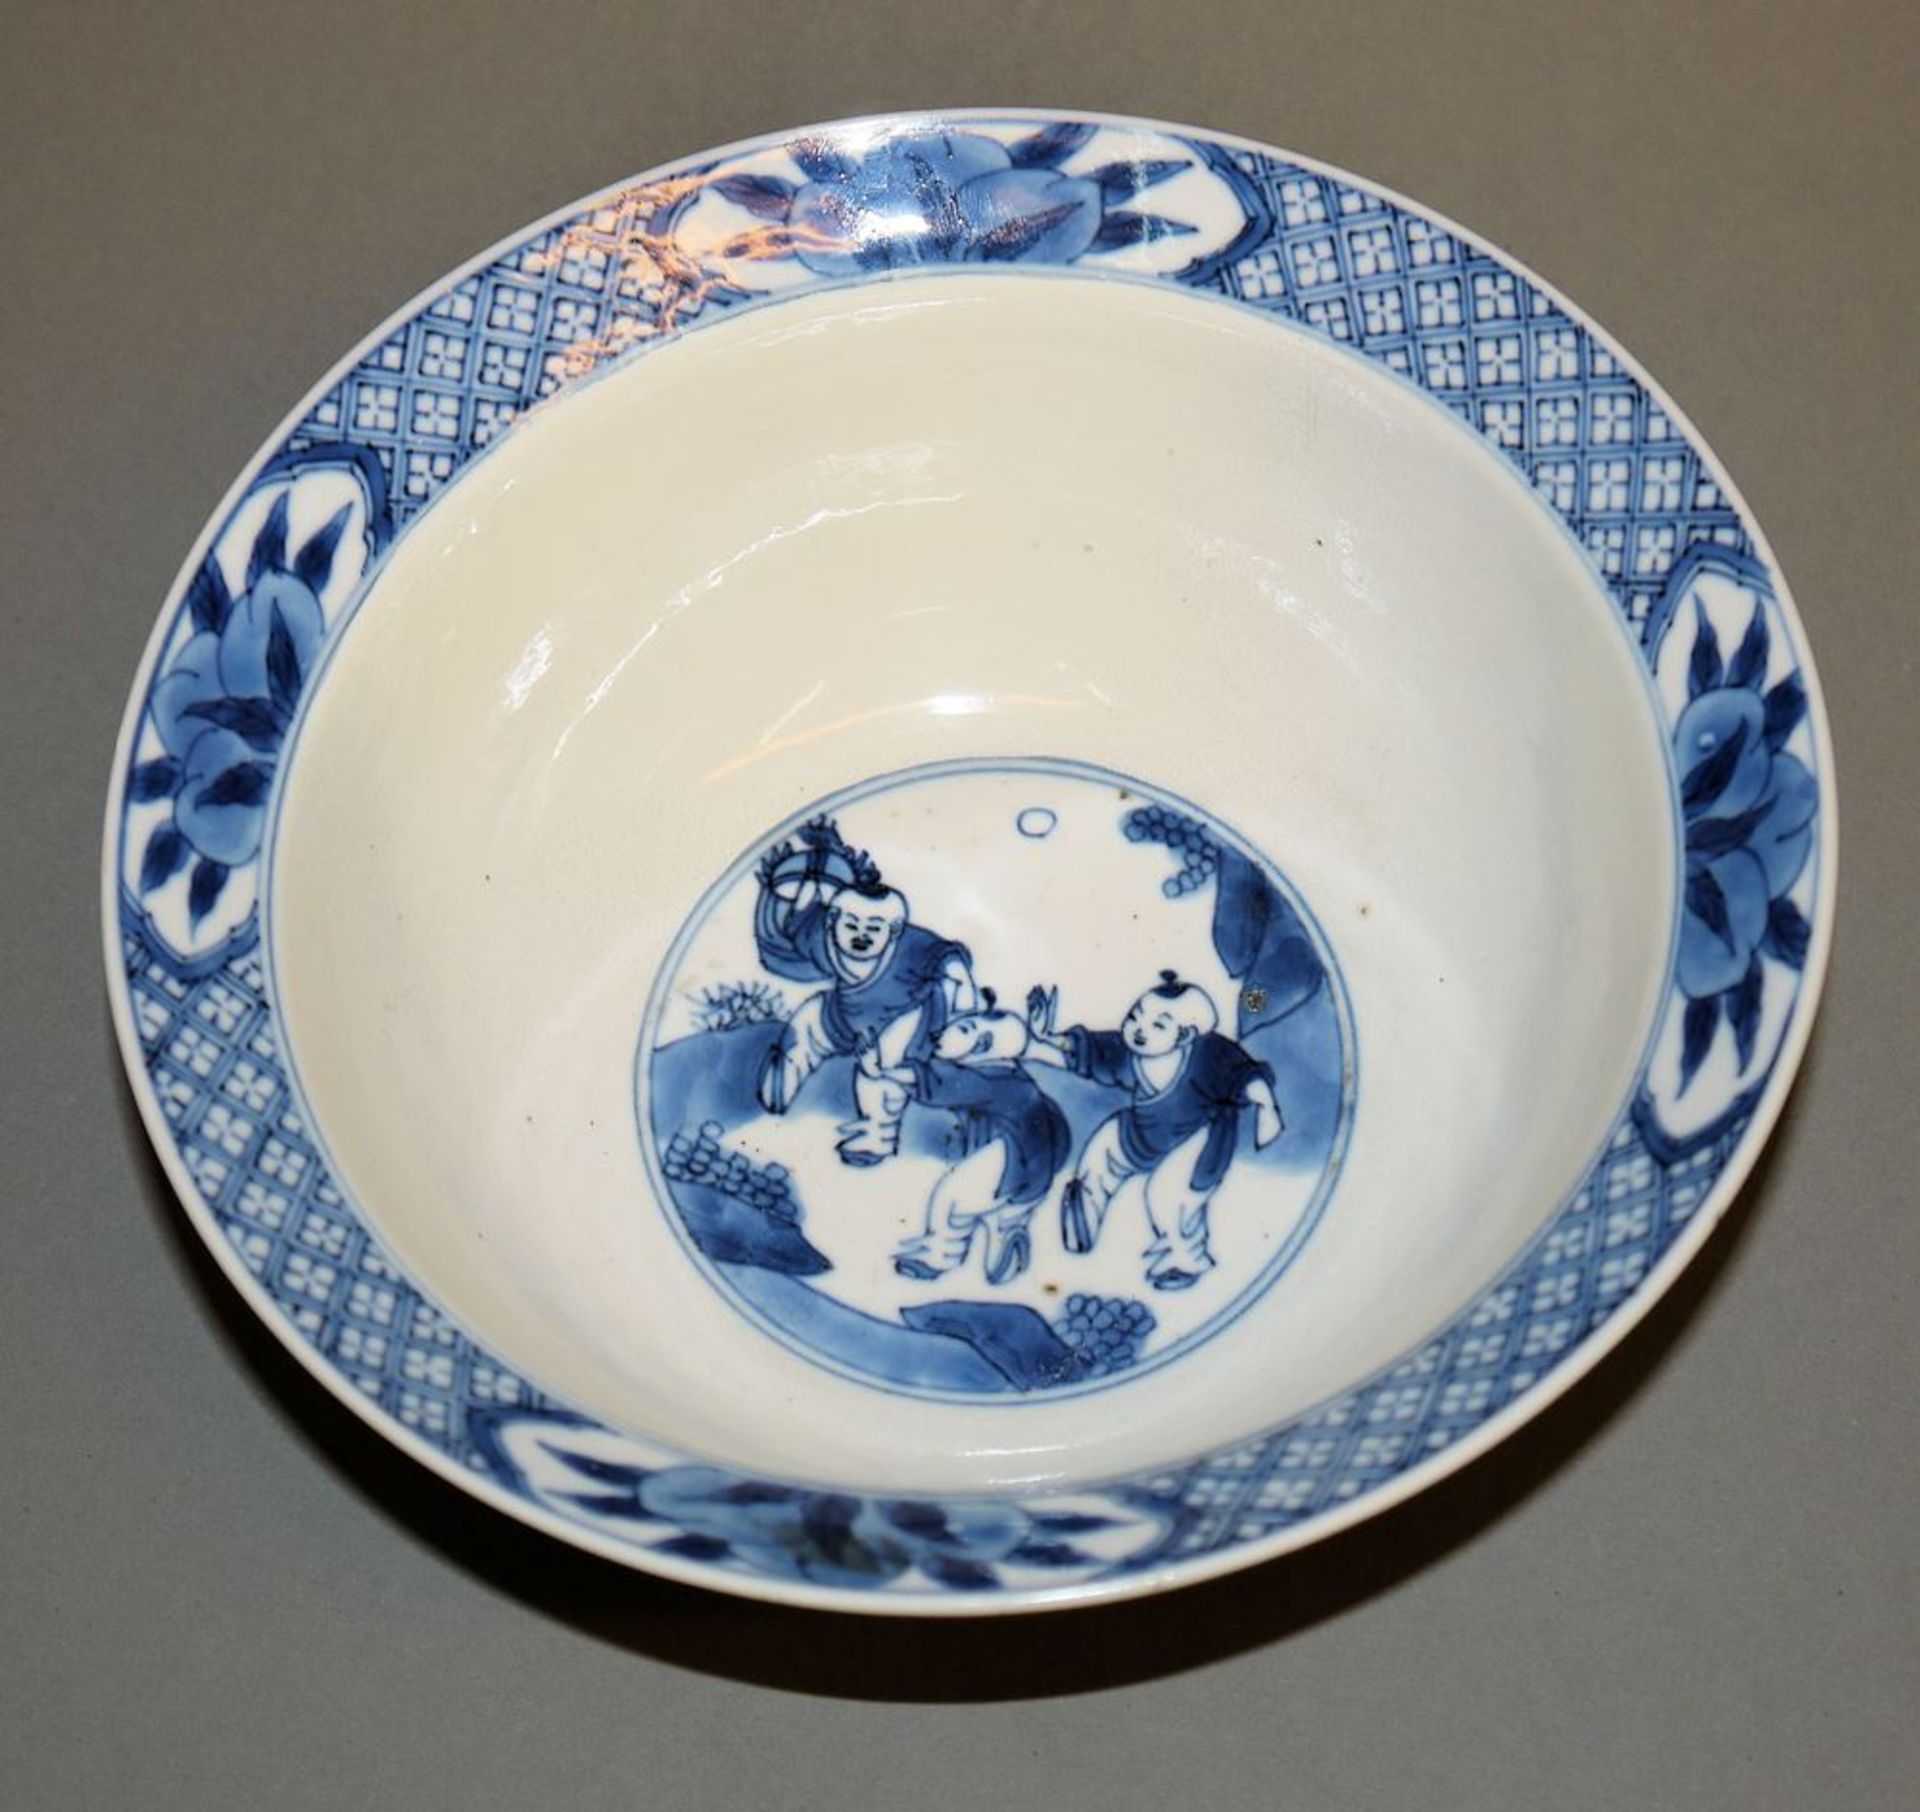 Blauweiß-Speiseschale der Kangxi-Zeit, China um 1700 - Bild 3 aus 4